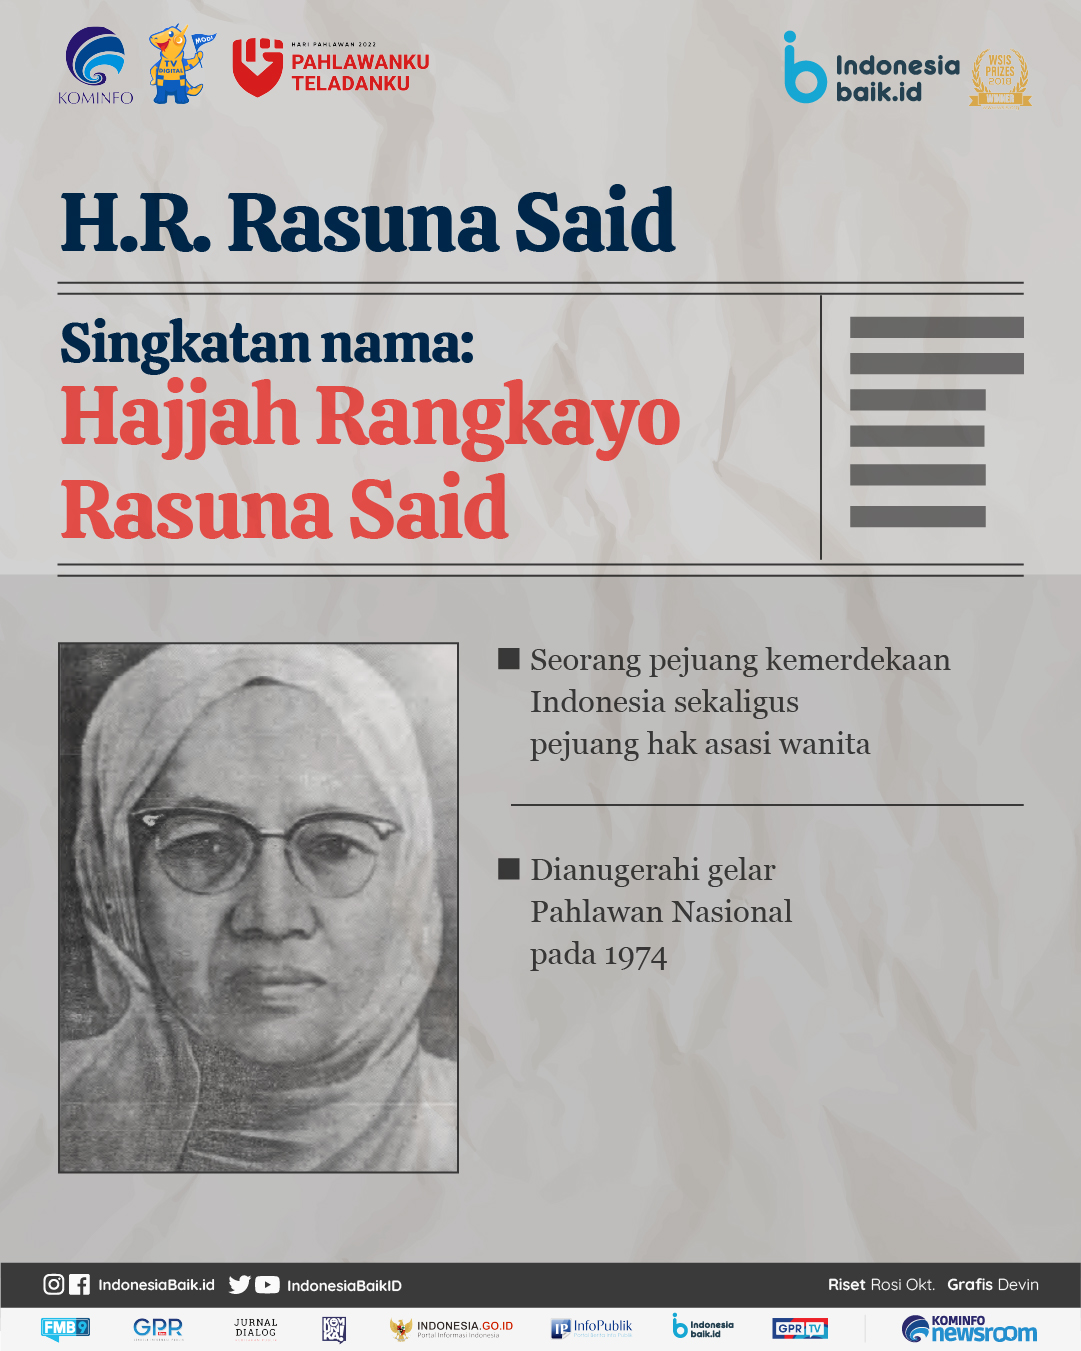 Rasuna Said, tokoh yang berpengaruh dalam kemajuan wanita